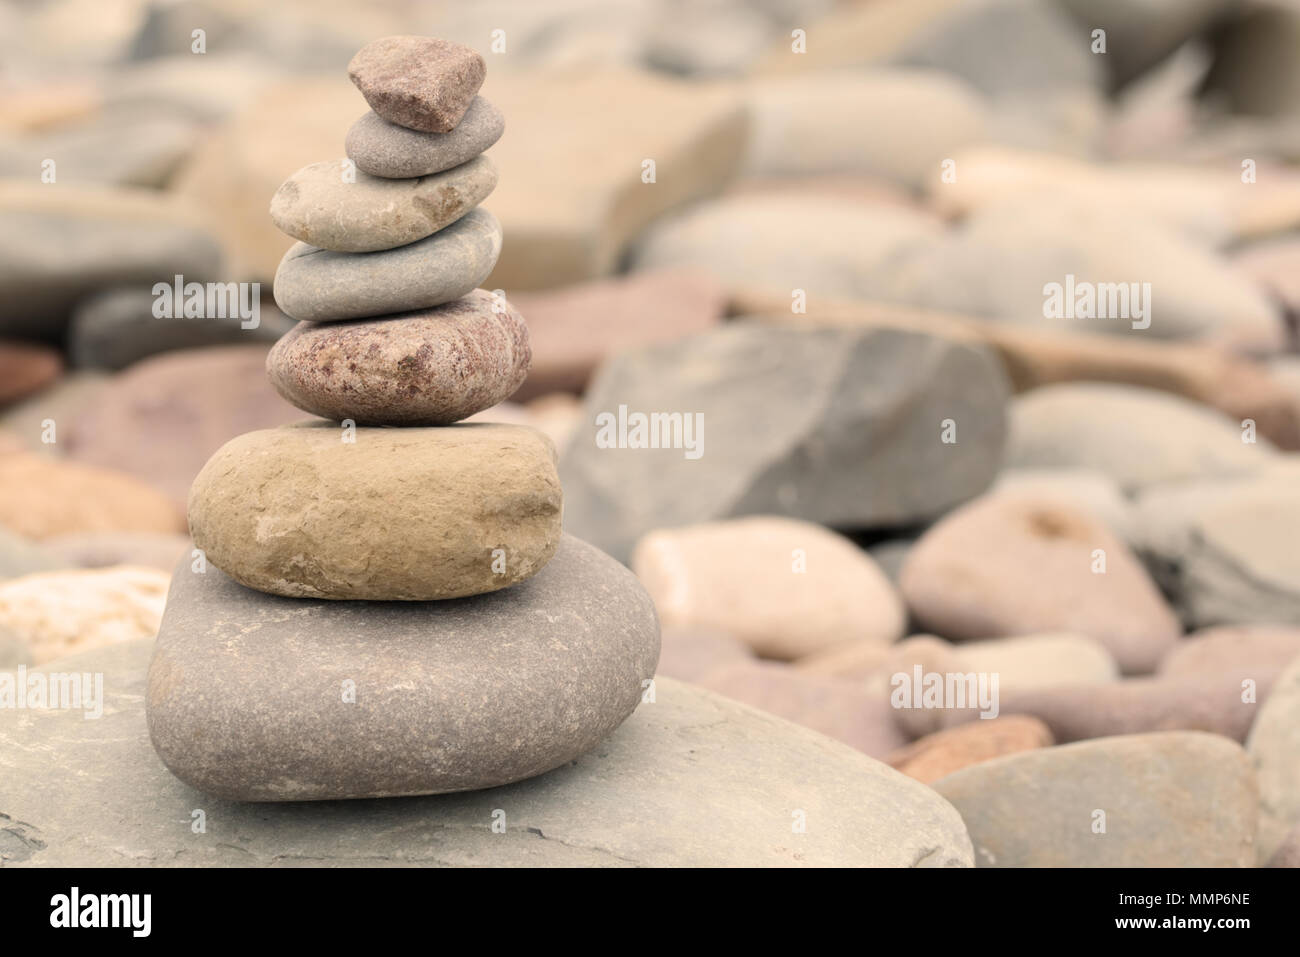 Tas de pierres sur une plage de galets de chaude soirée de lumière. Concept zen paisible calme Banque D'Images